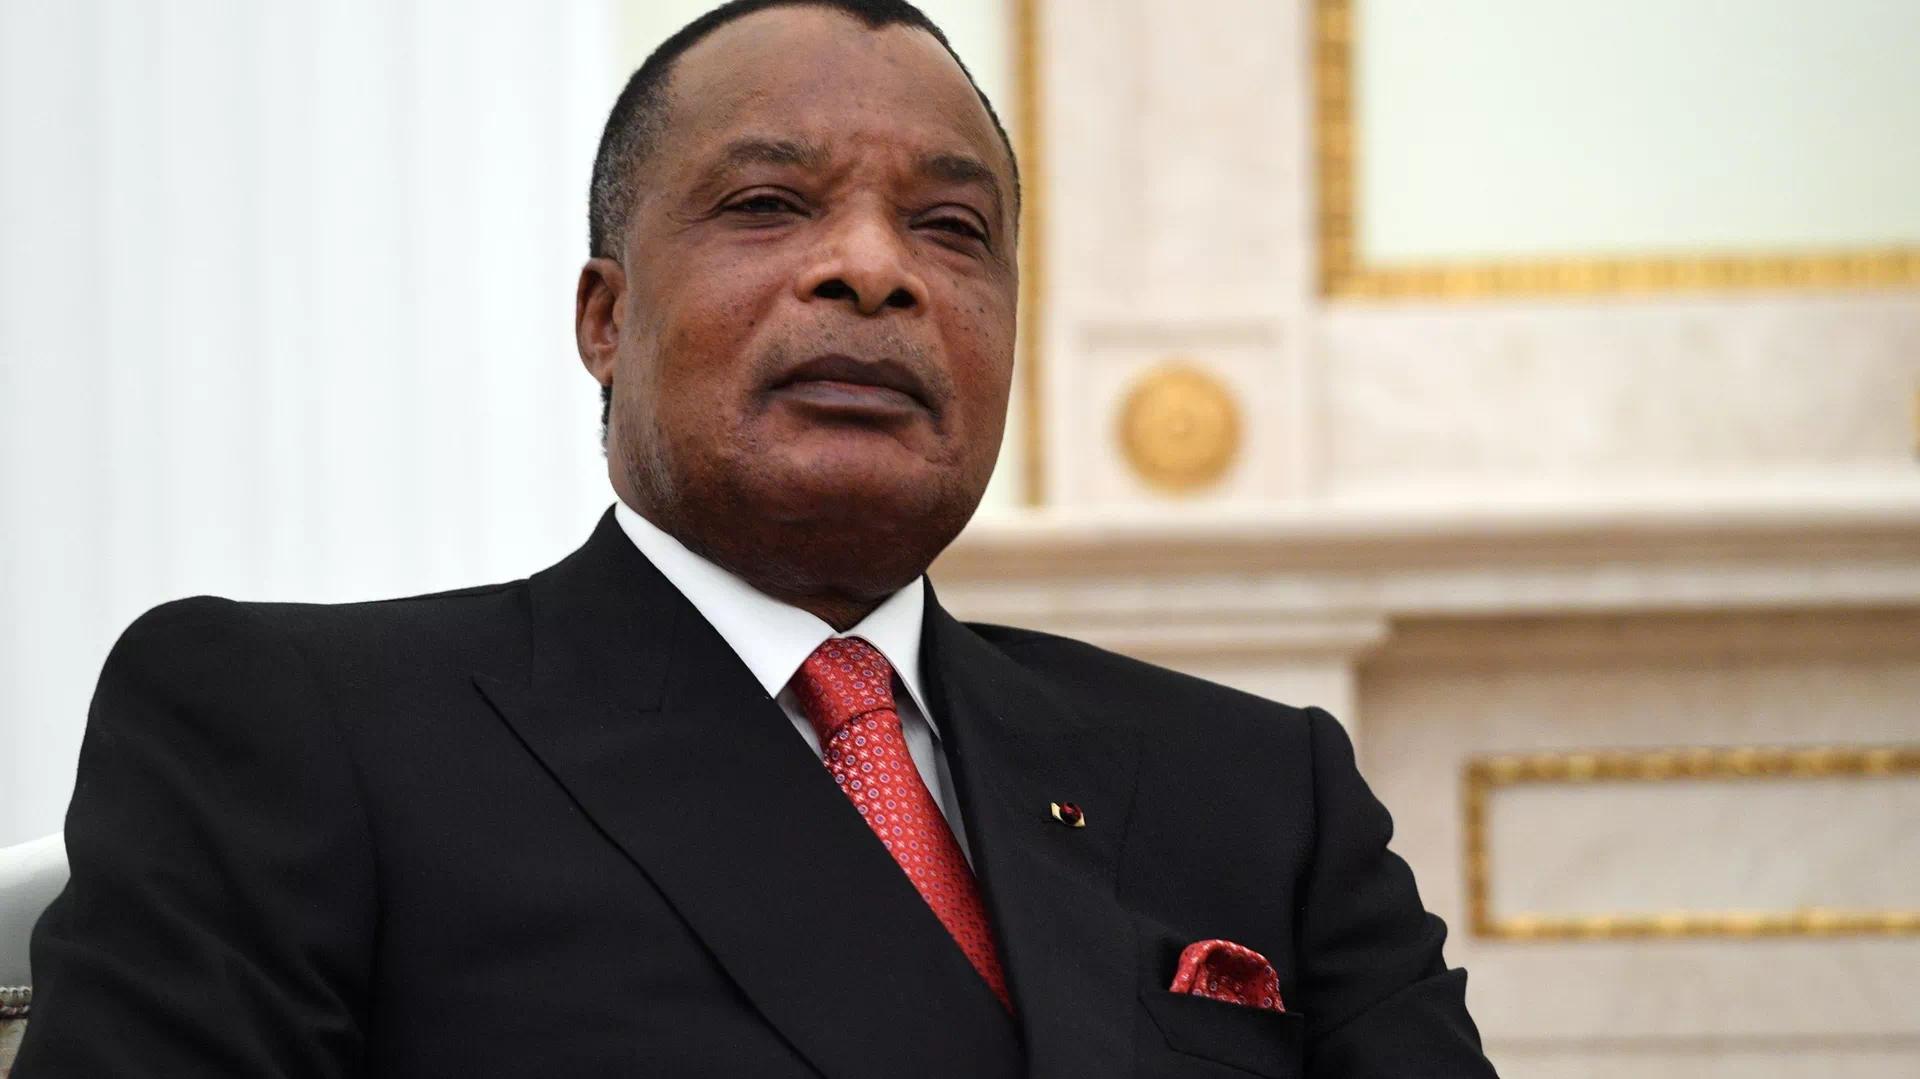 刚果共和国总统讲述本国代表团在前往俄非峰会时遇到的困难